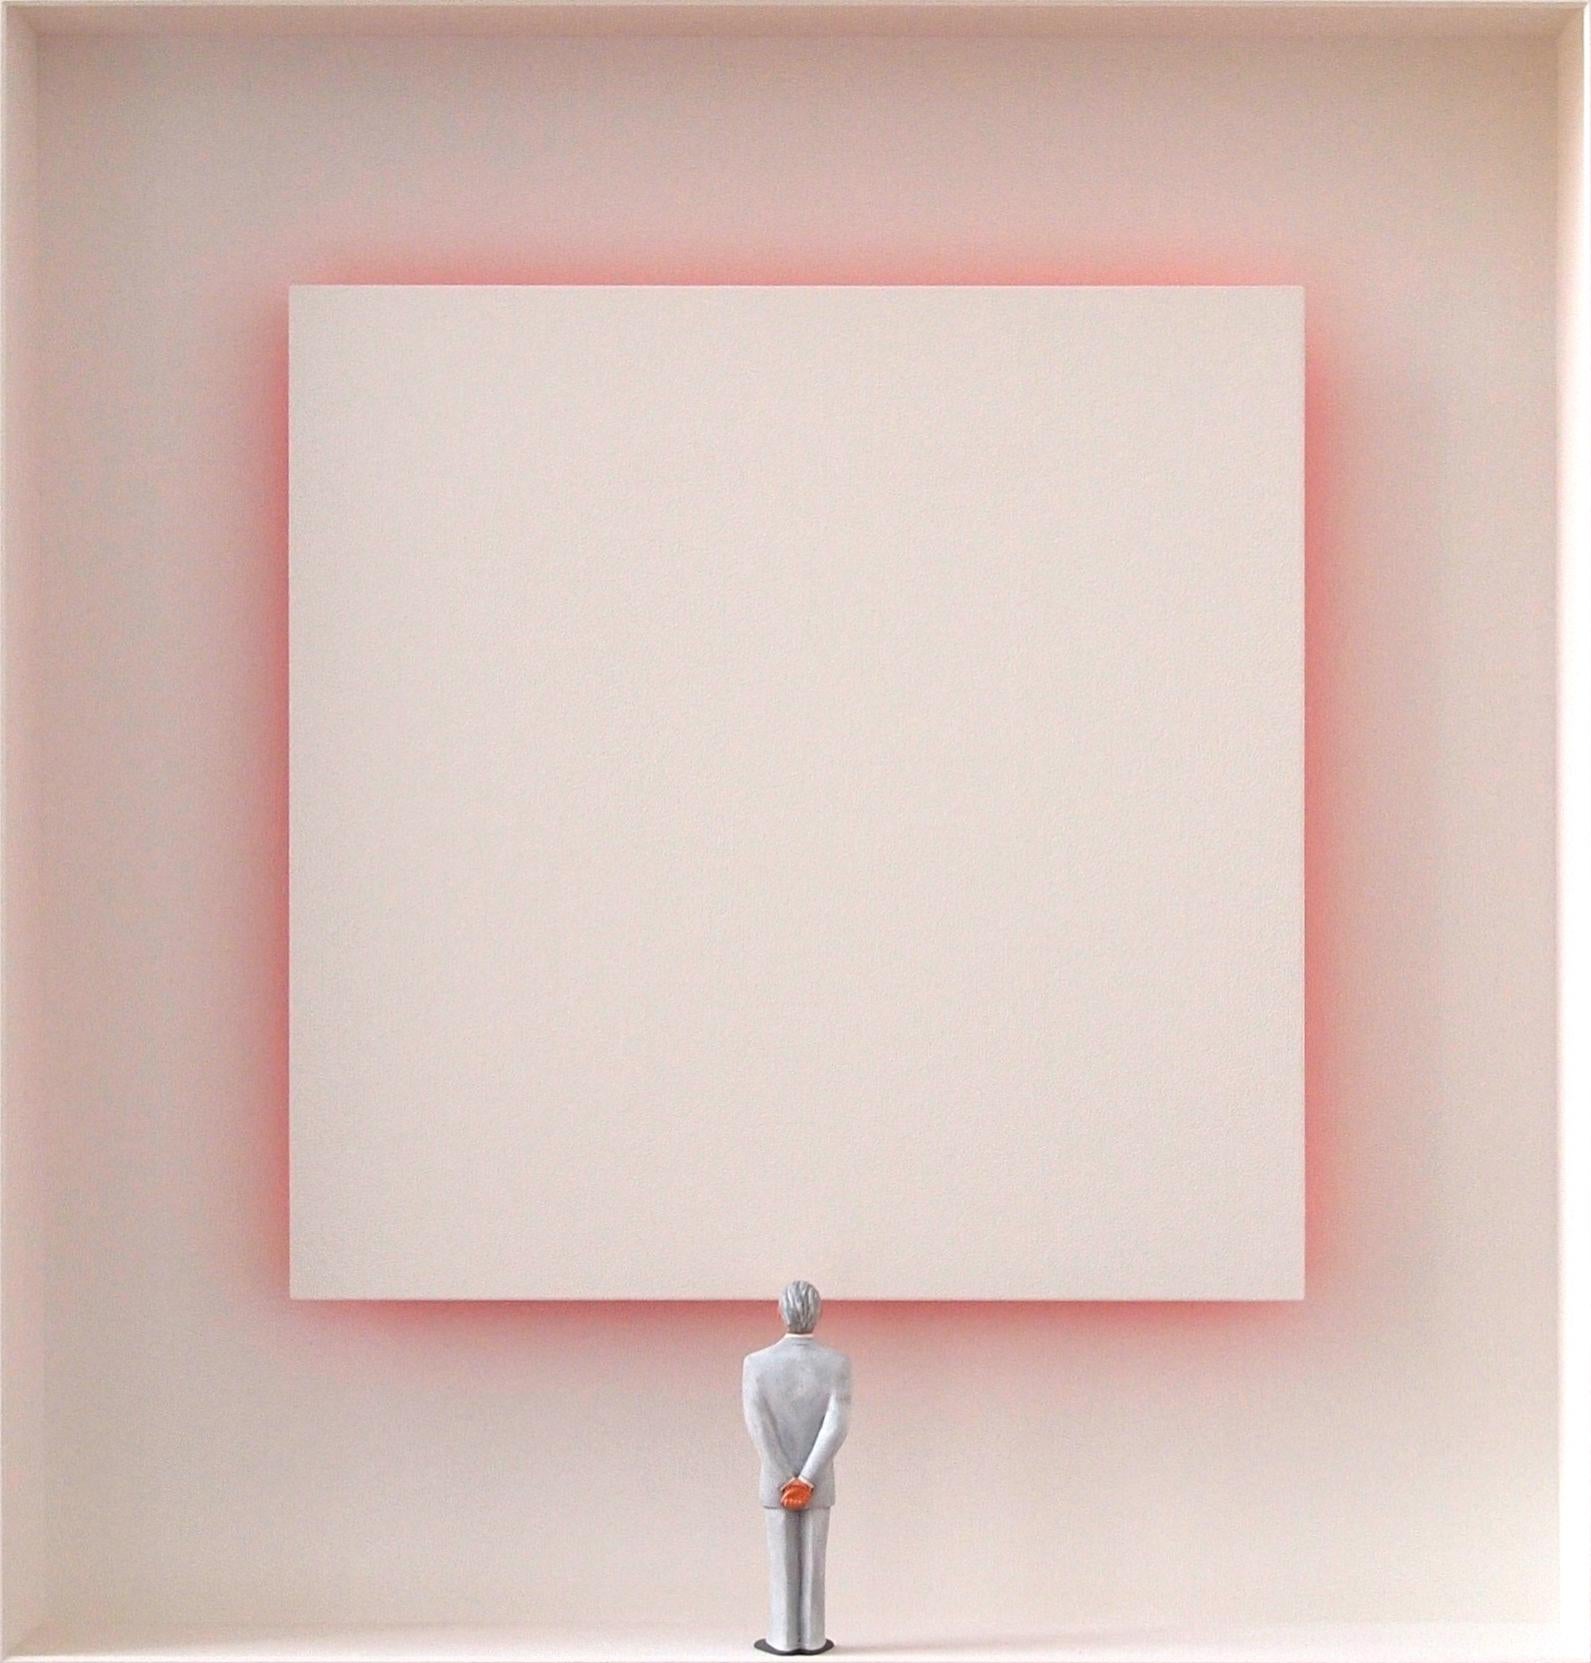 Great Reflection - zeitgenössisches minimalistisches Kunstwerk weiße Leinwand mit Reflexion – Mixed Media Art von Volker Kuhn